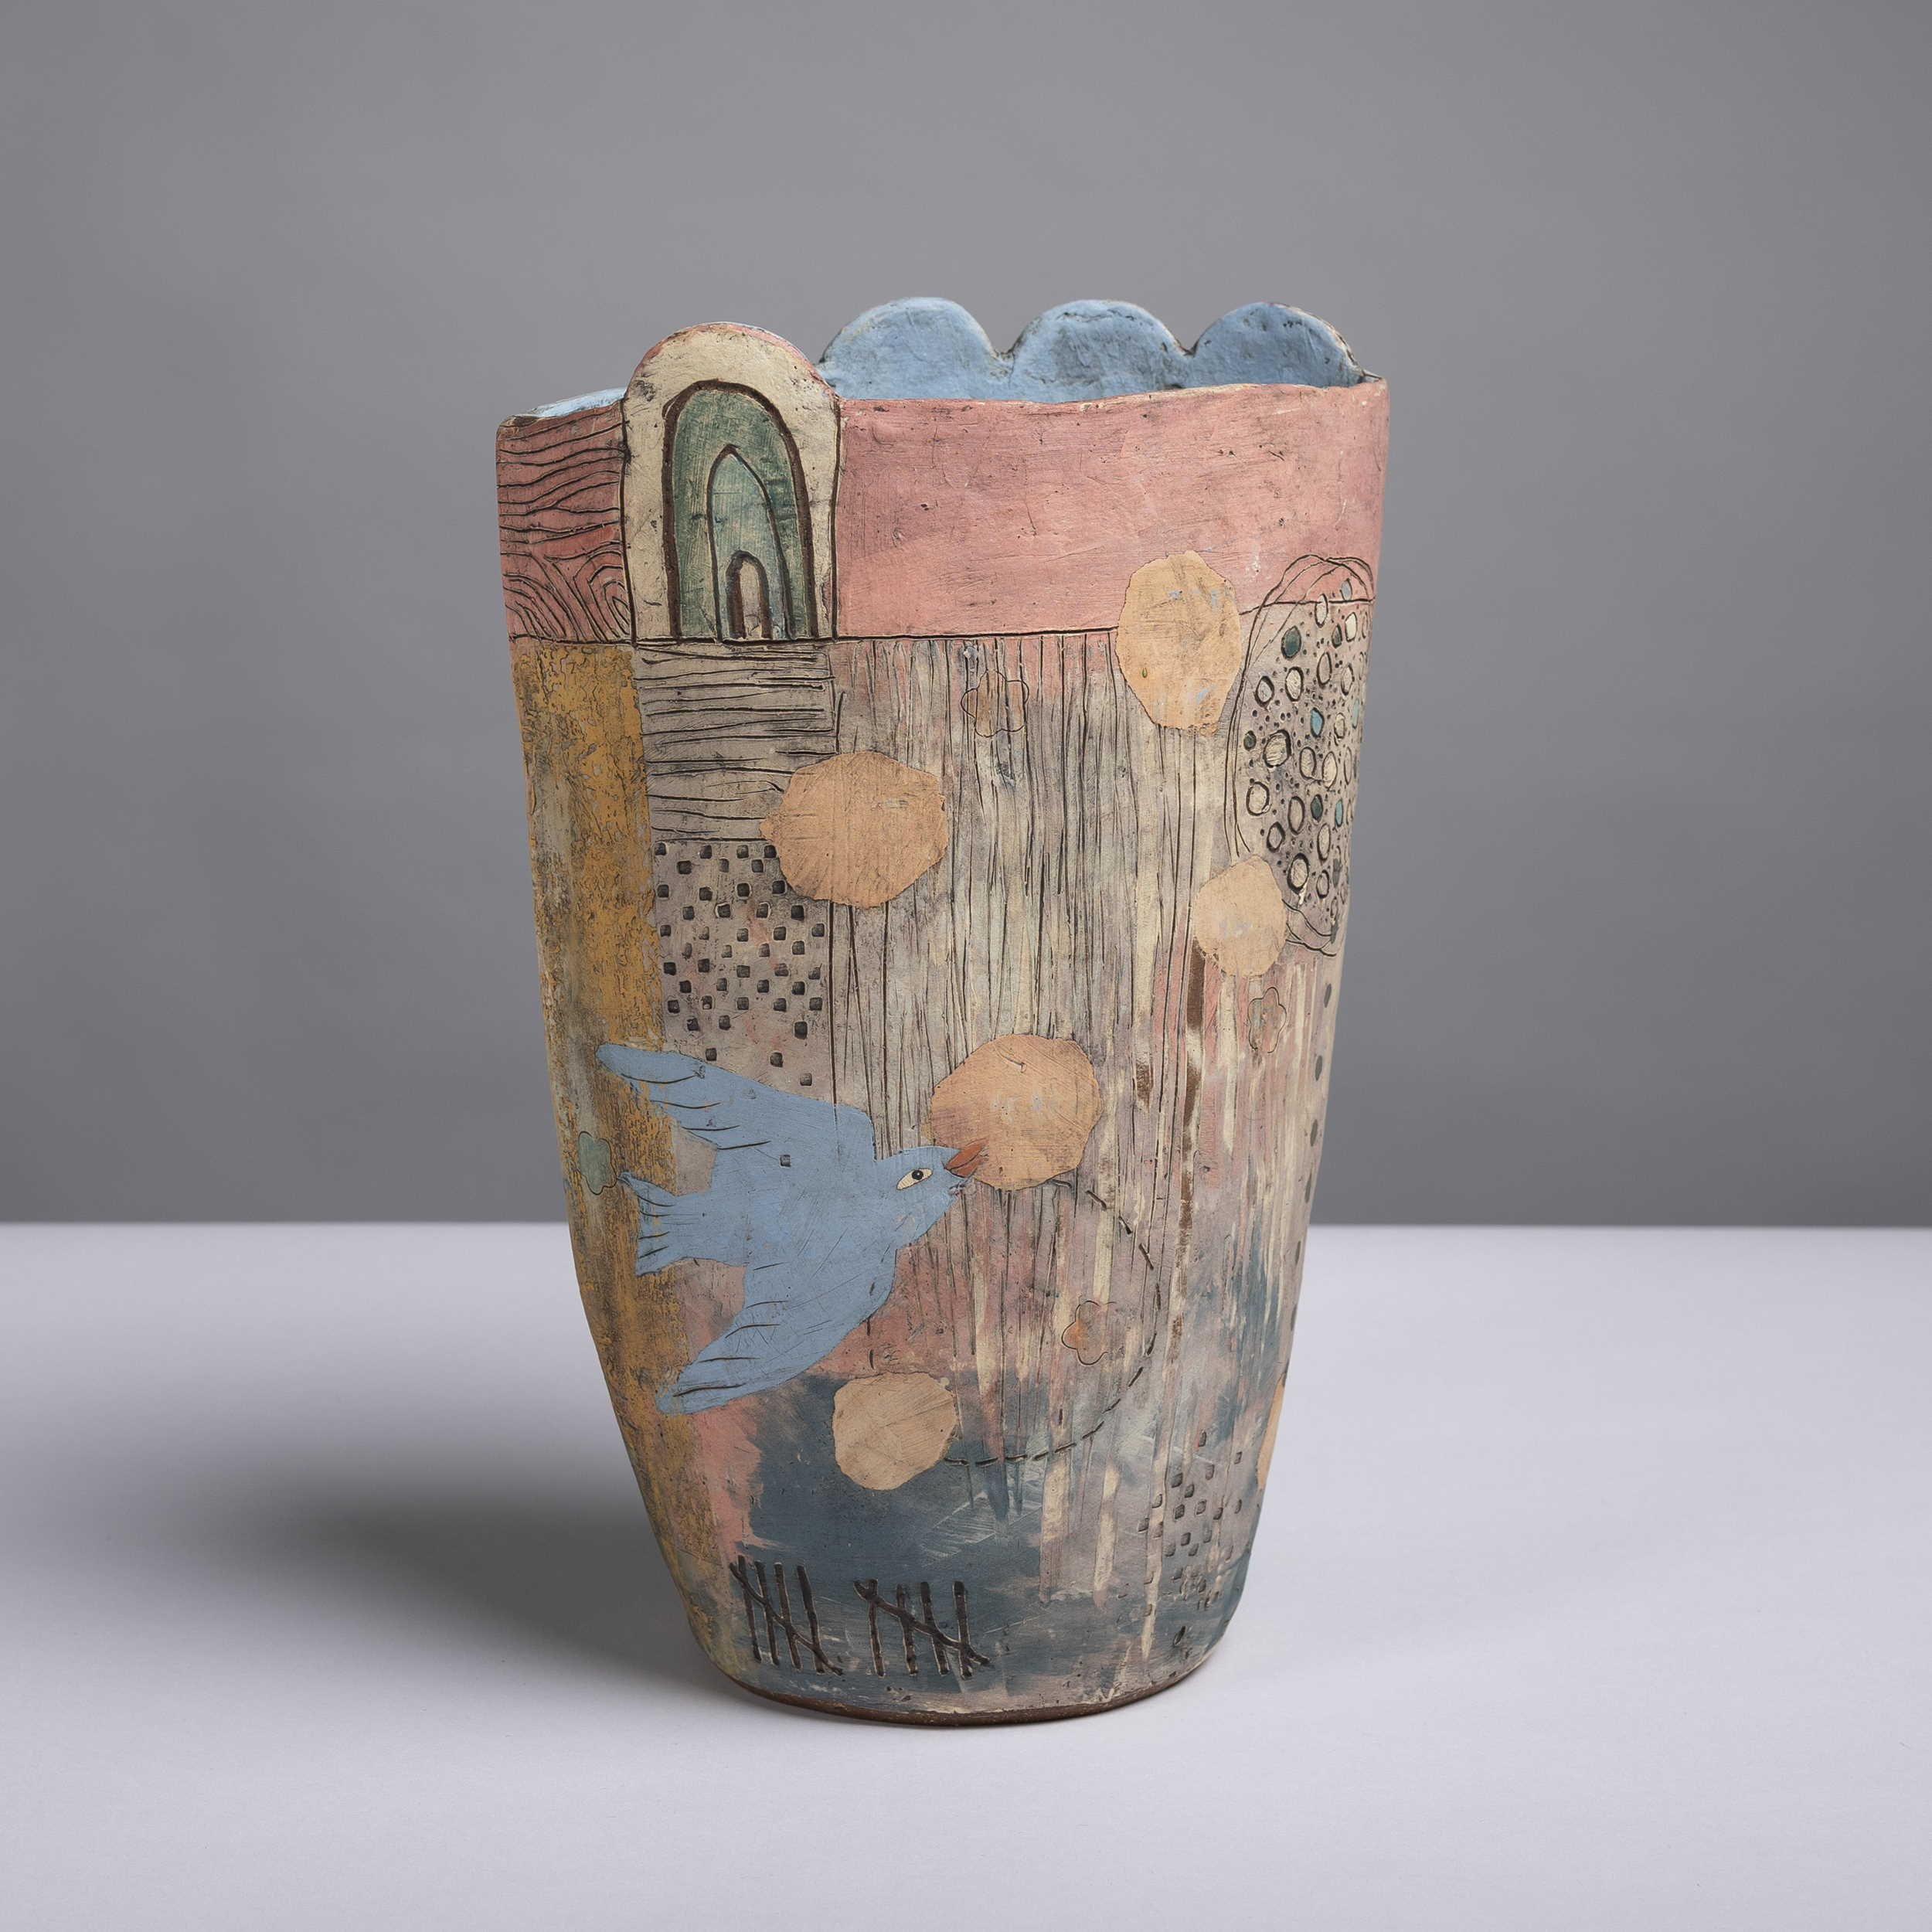  Eekta Trienekens   Vase with birds   40 cm ht 